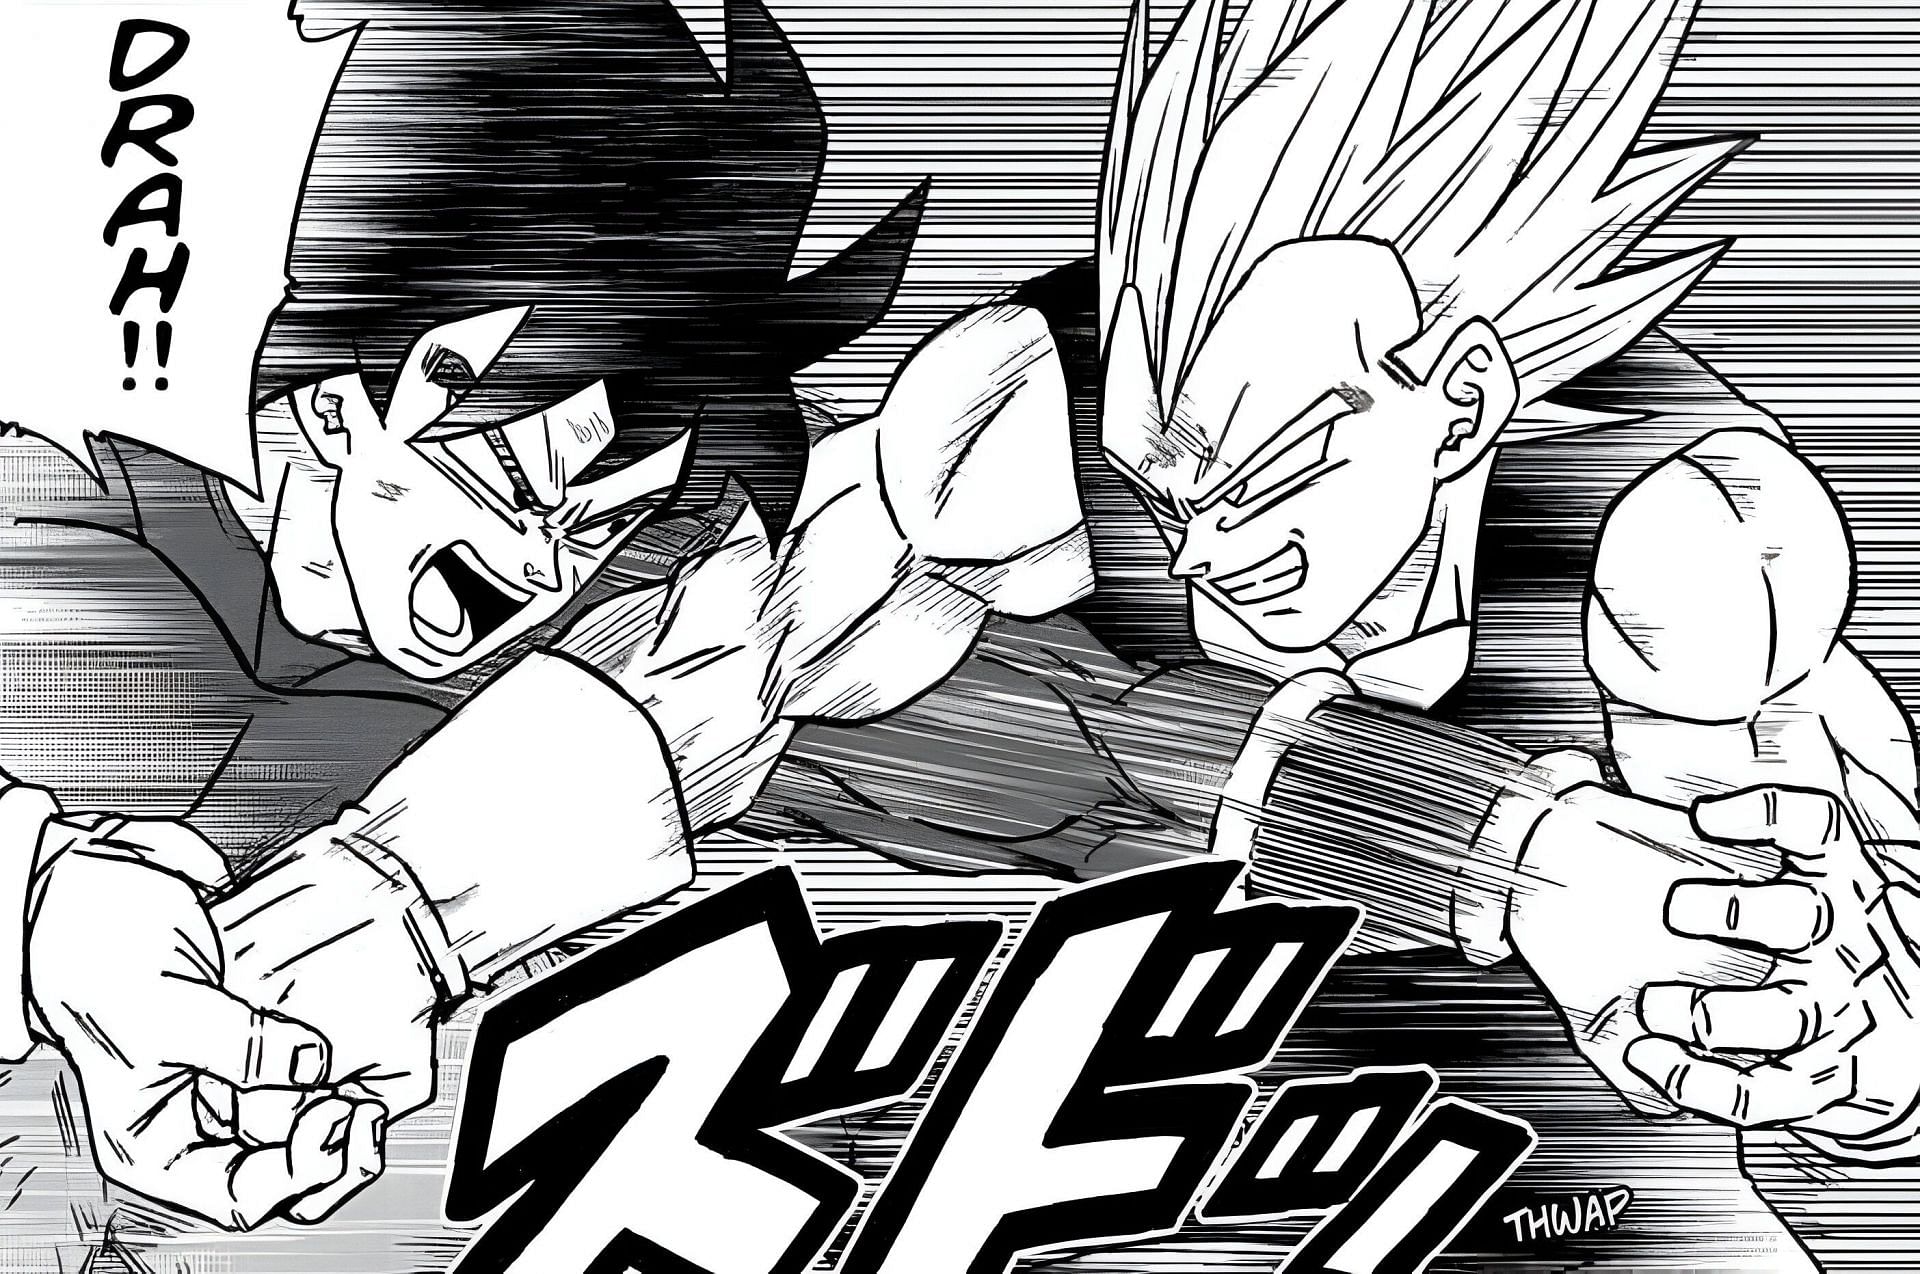 Broly and Vegeta as seen in the Dragon Ball Super manga (Image via Shueisha)